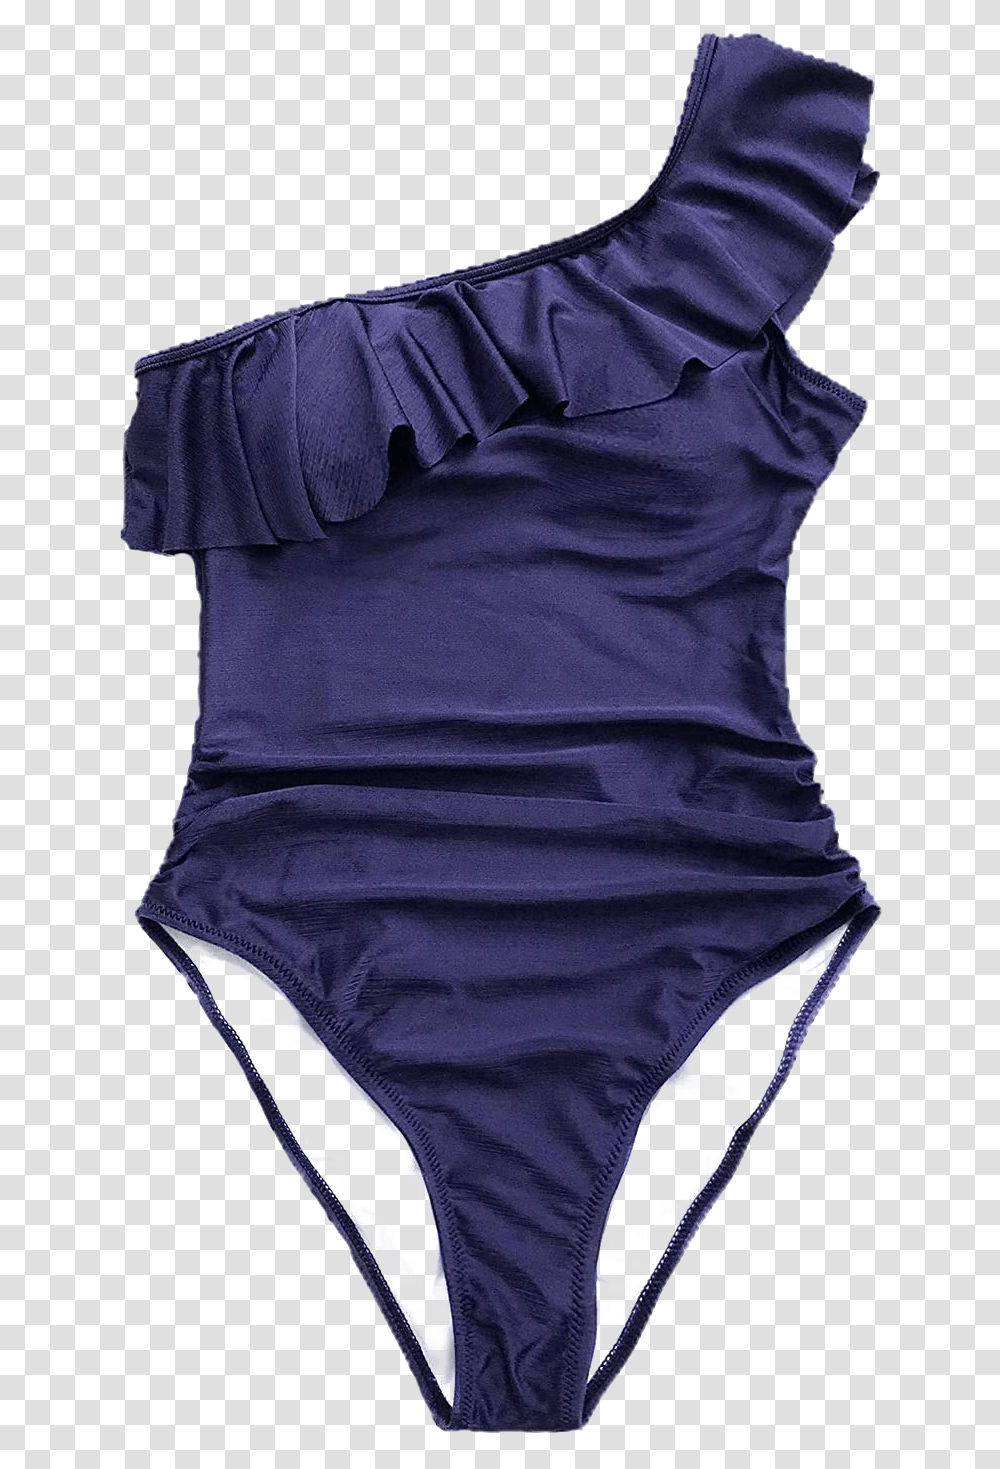 Bathing Suit Image Swimsuit, Blouse, T-Shirt, Underwear Transparent Png